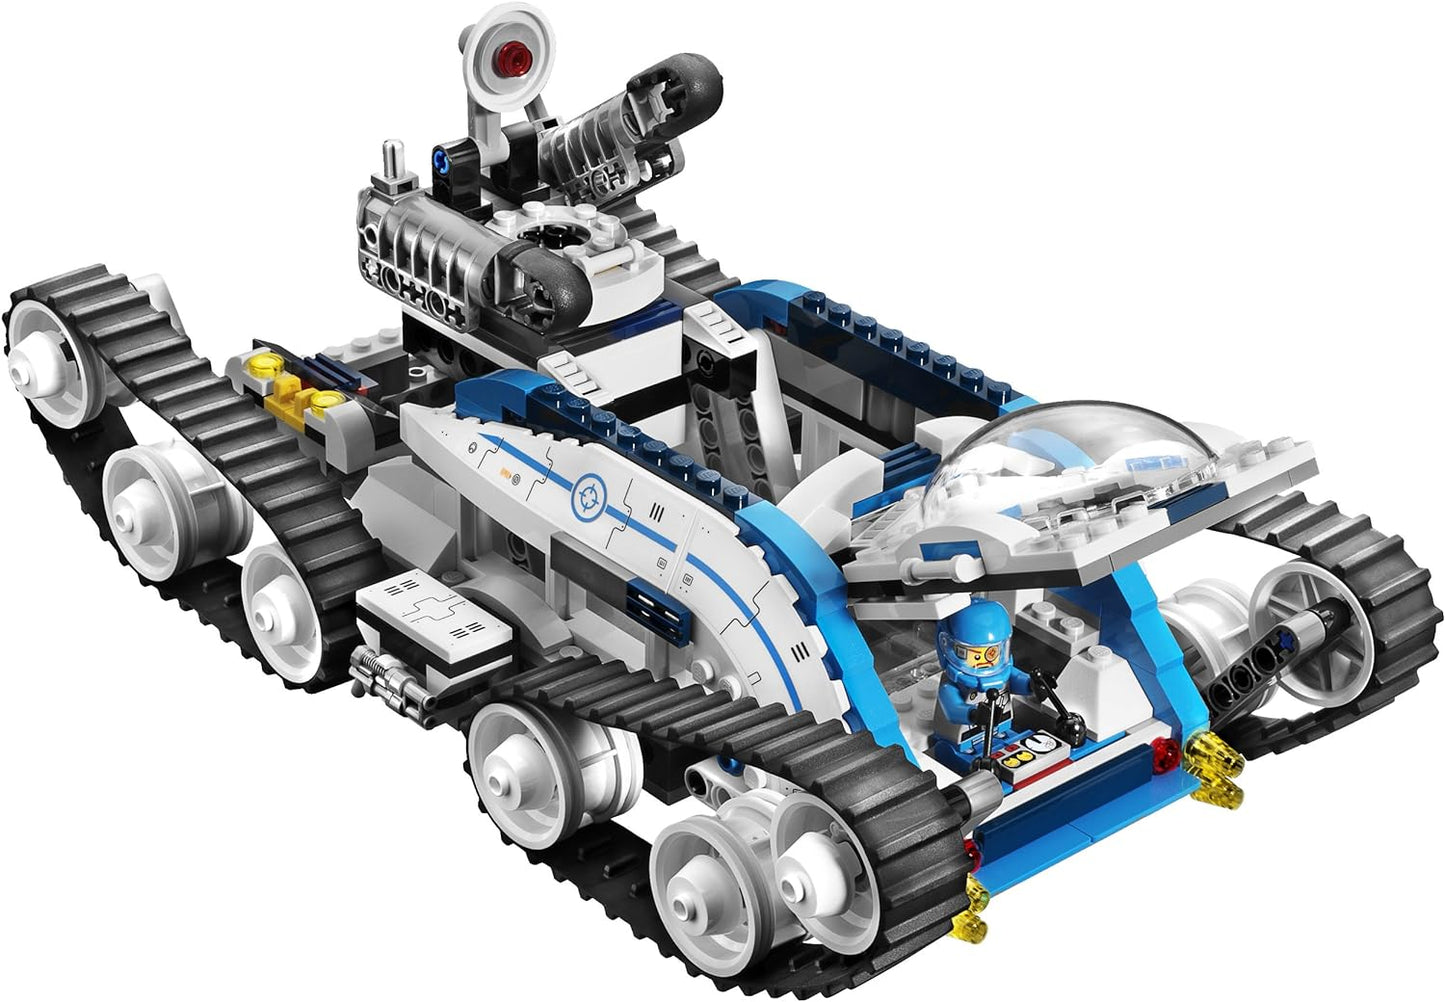 LEGO Galaxy Squad Galactic Titan